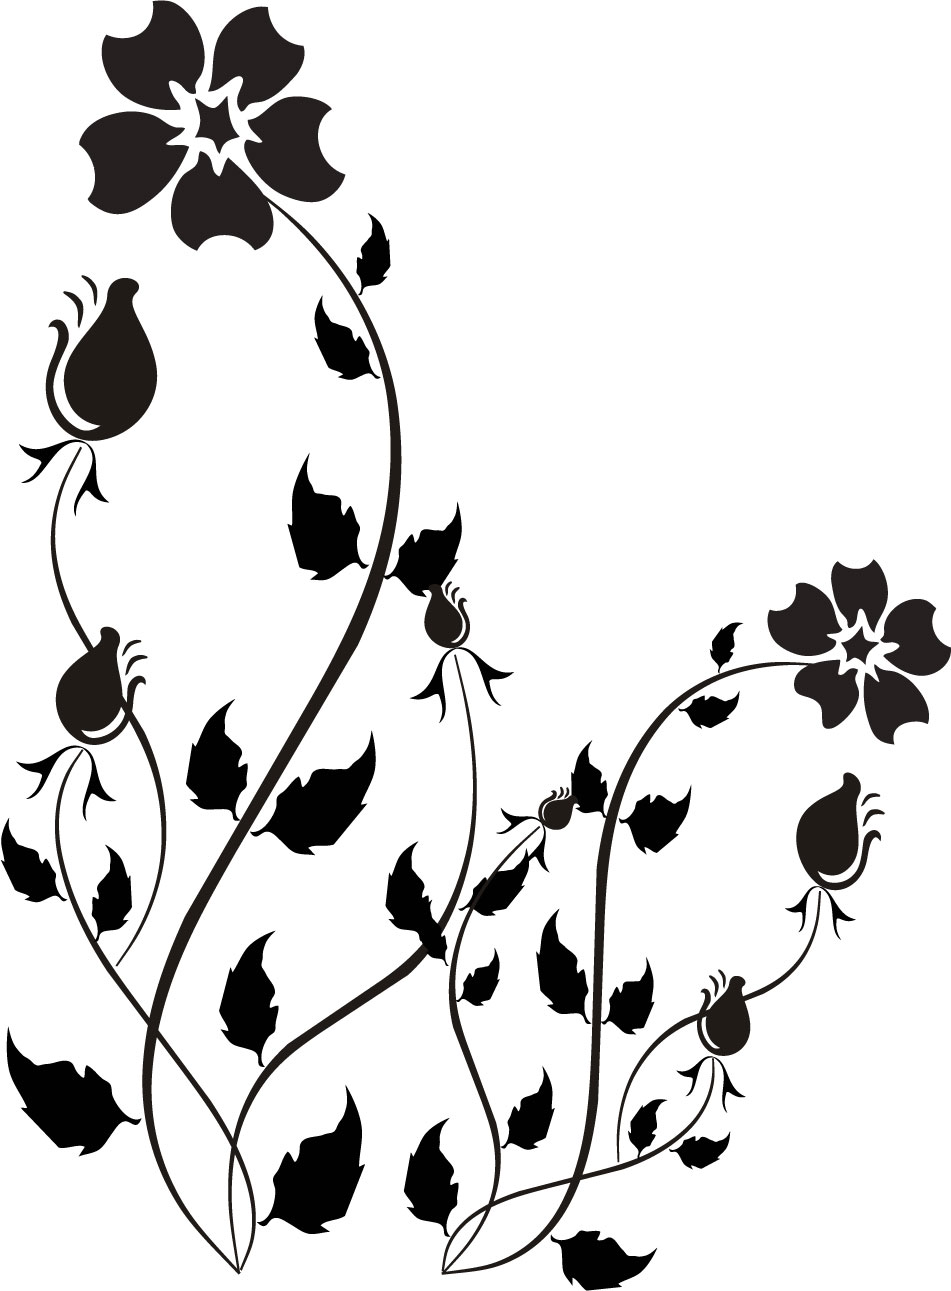 花のイラスト フリー素材 白黒 モノクロno 460 白黒 葉 つぼみ